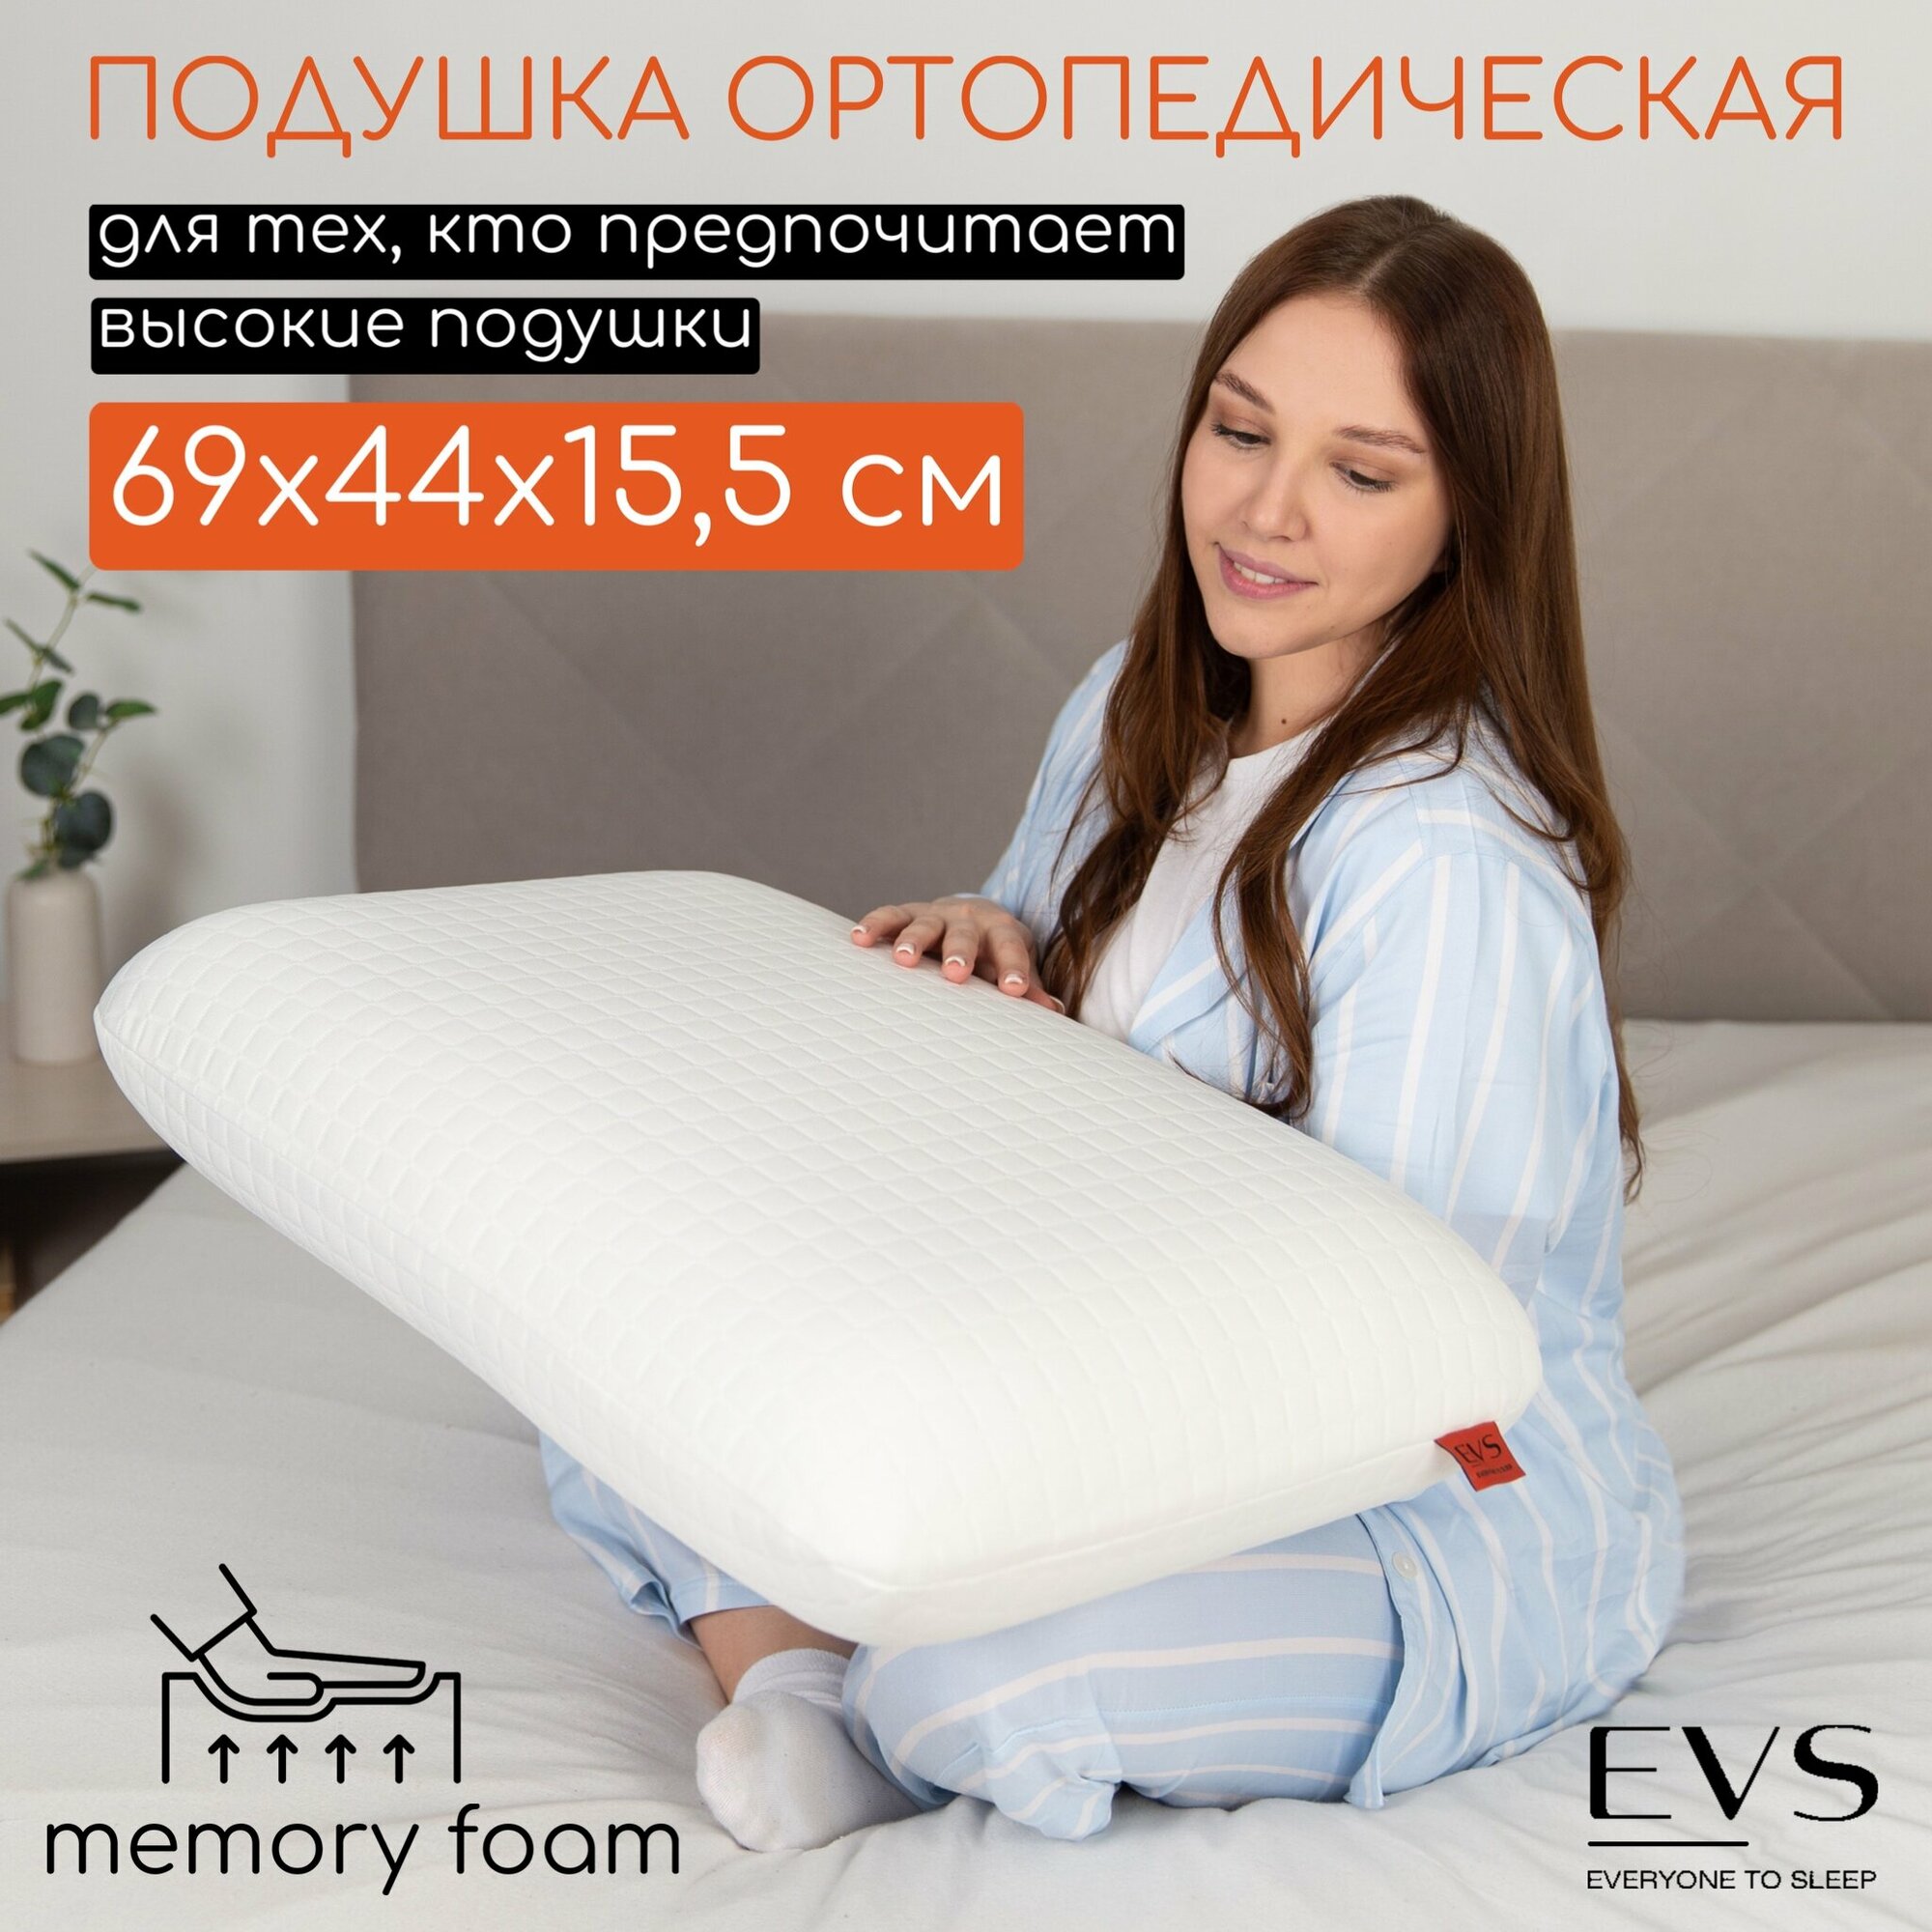 Подушка ортопедическая анатомическая для сна с эффектом памяти подушка 50х70 для взрослых, высота 15.5см